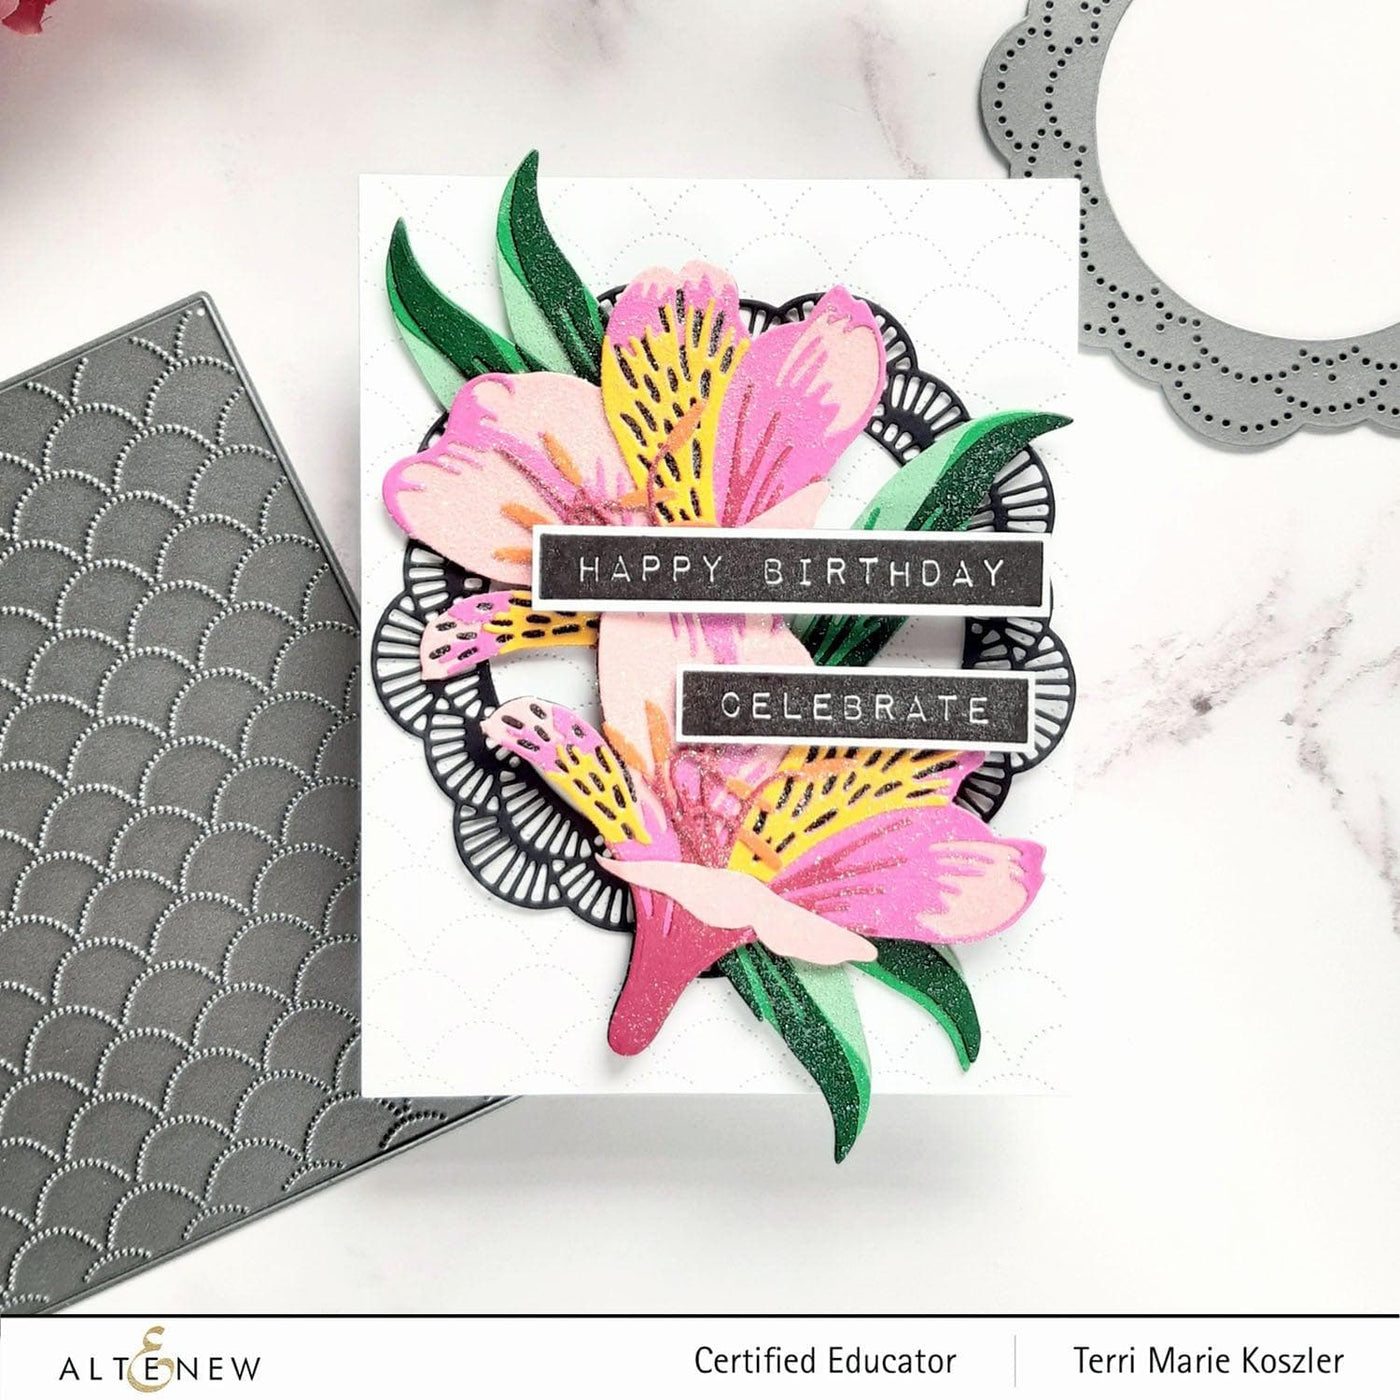 Part A-Glitz Art Craft Co.,LTD Dies Craft-A-Flower: Peruvian Lily Layering Die Set